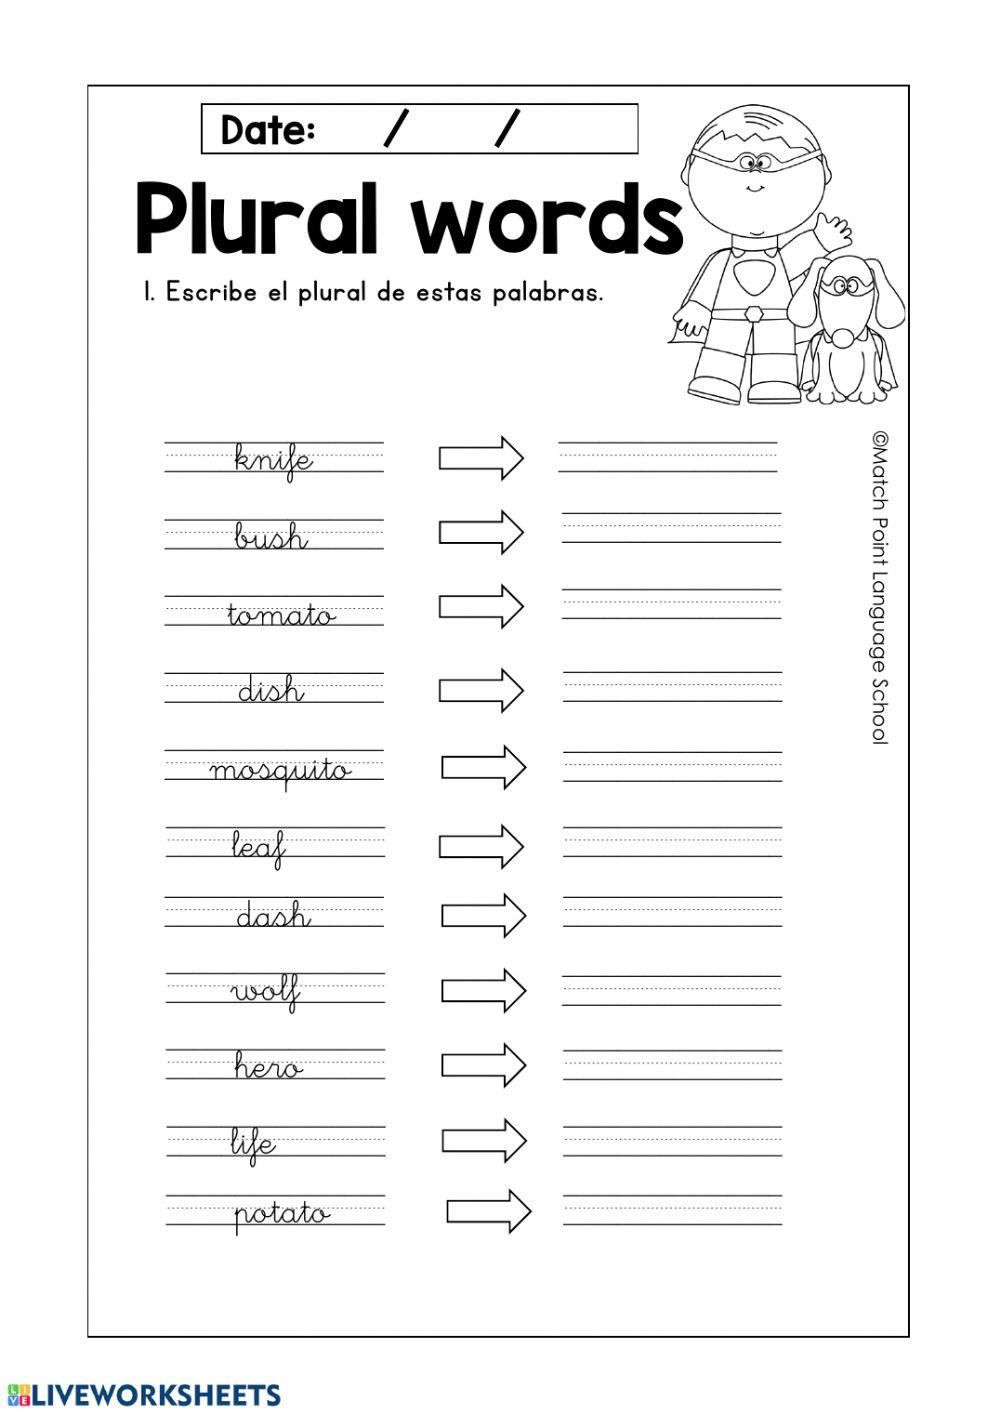 Plural words (sh, o, f, fe)